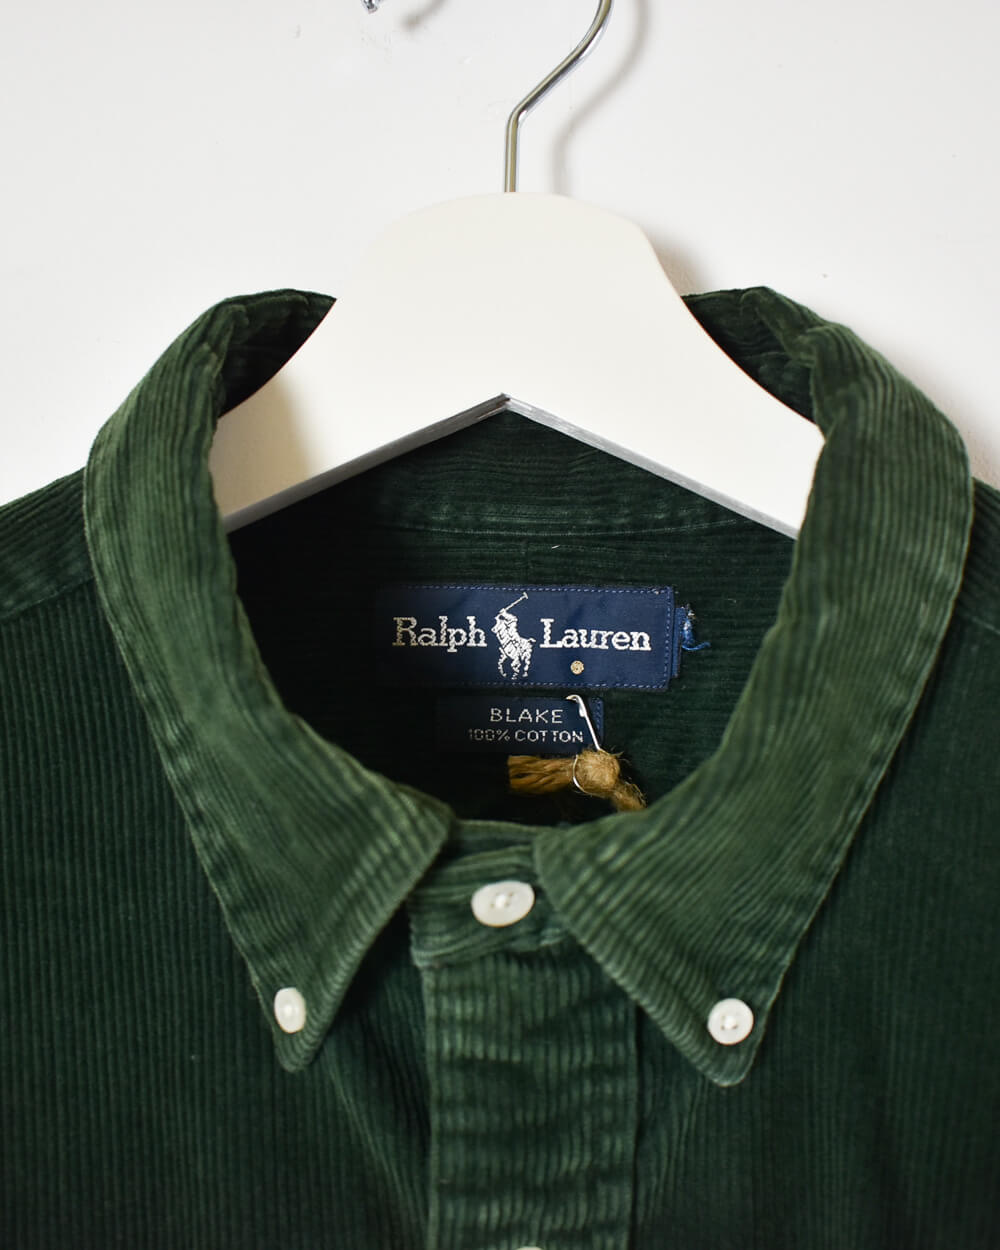 Green Ralph Lauren Corduroy Heavyweight Shirt - X-Large